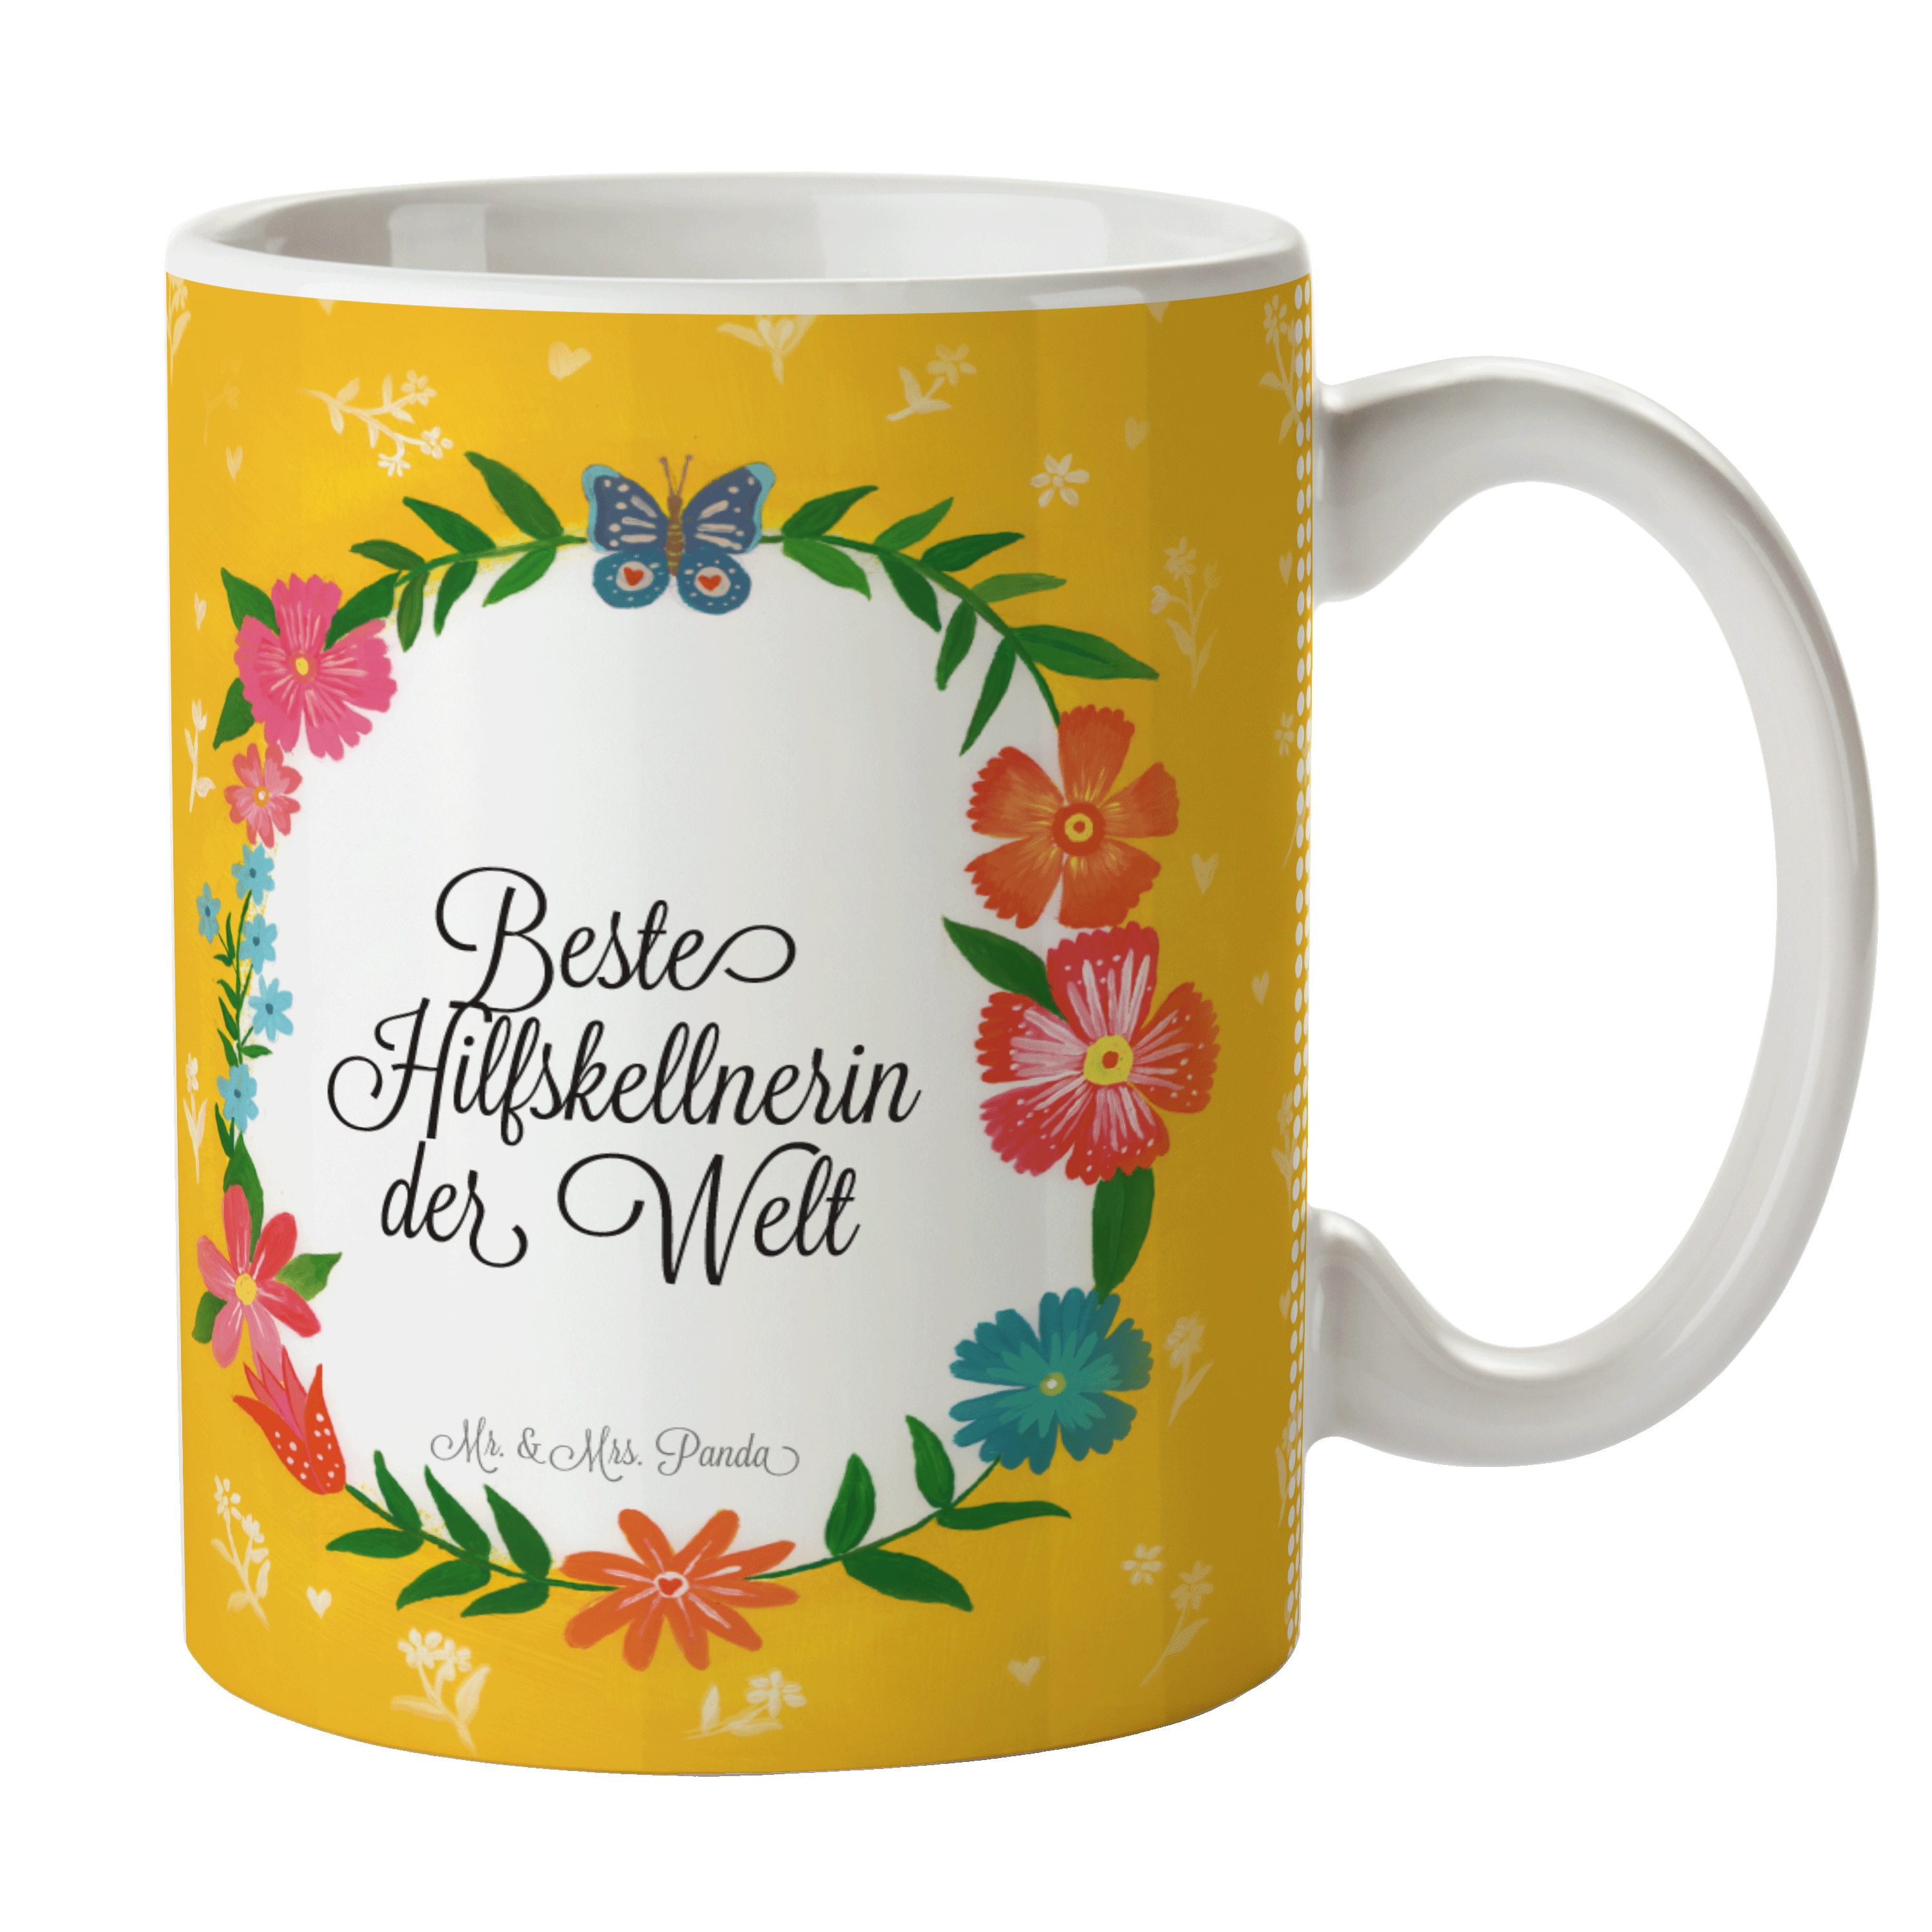 Mr. & Mrs. Panda Tasse Hilfskellnerin - Geschenk, Gratulation, Tasse Sprüche, Kaffeebecher, Keramik